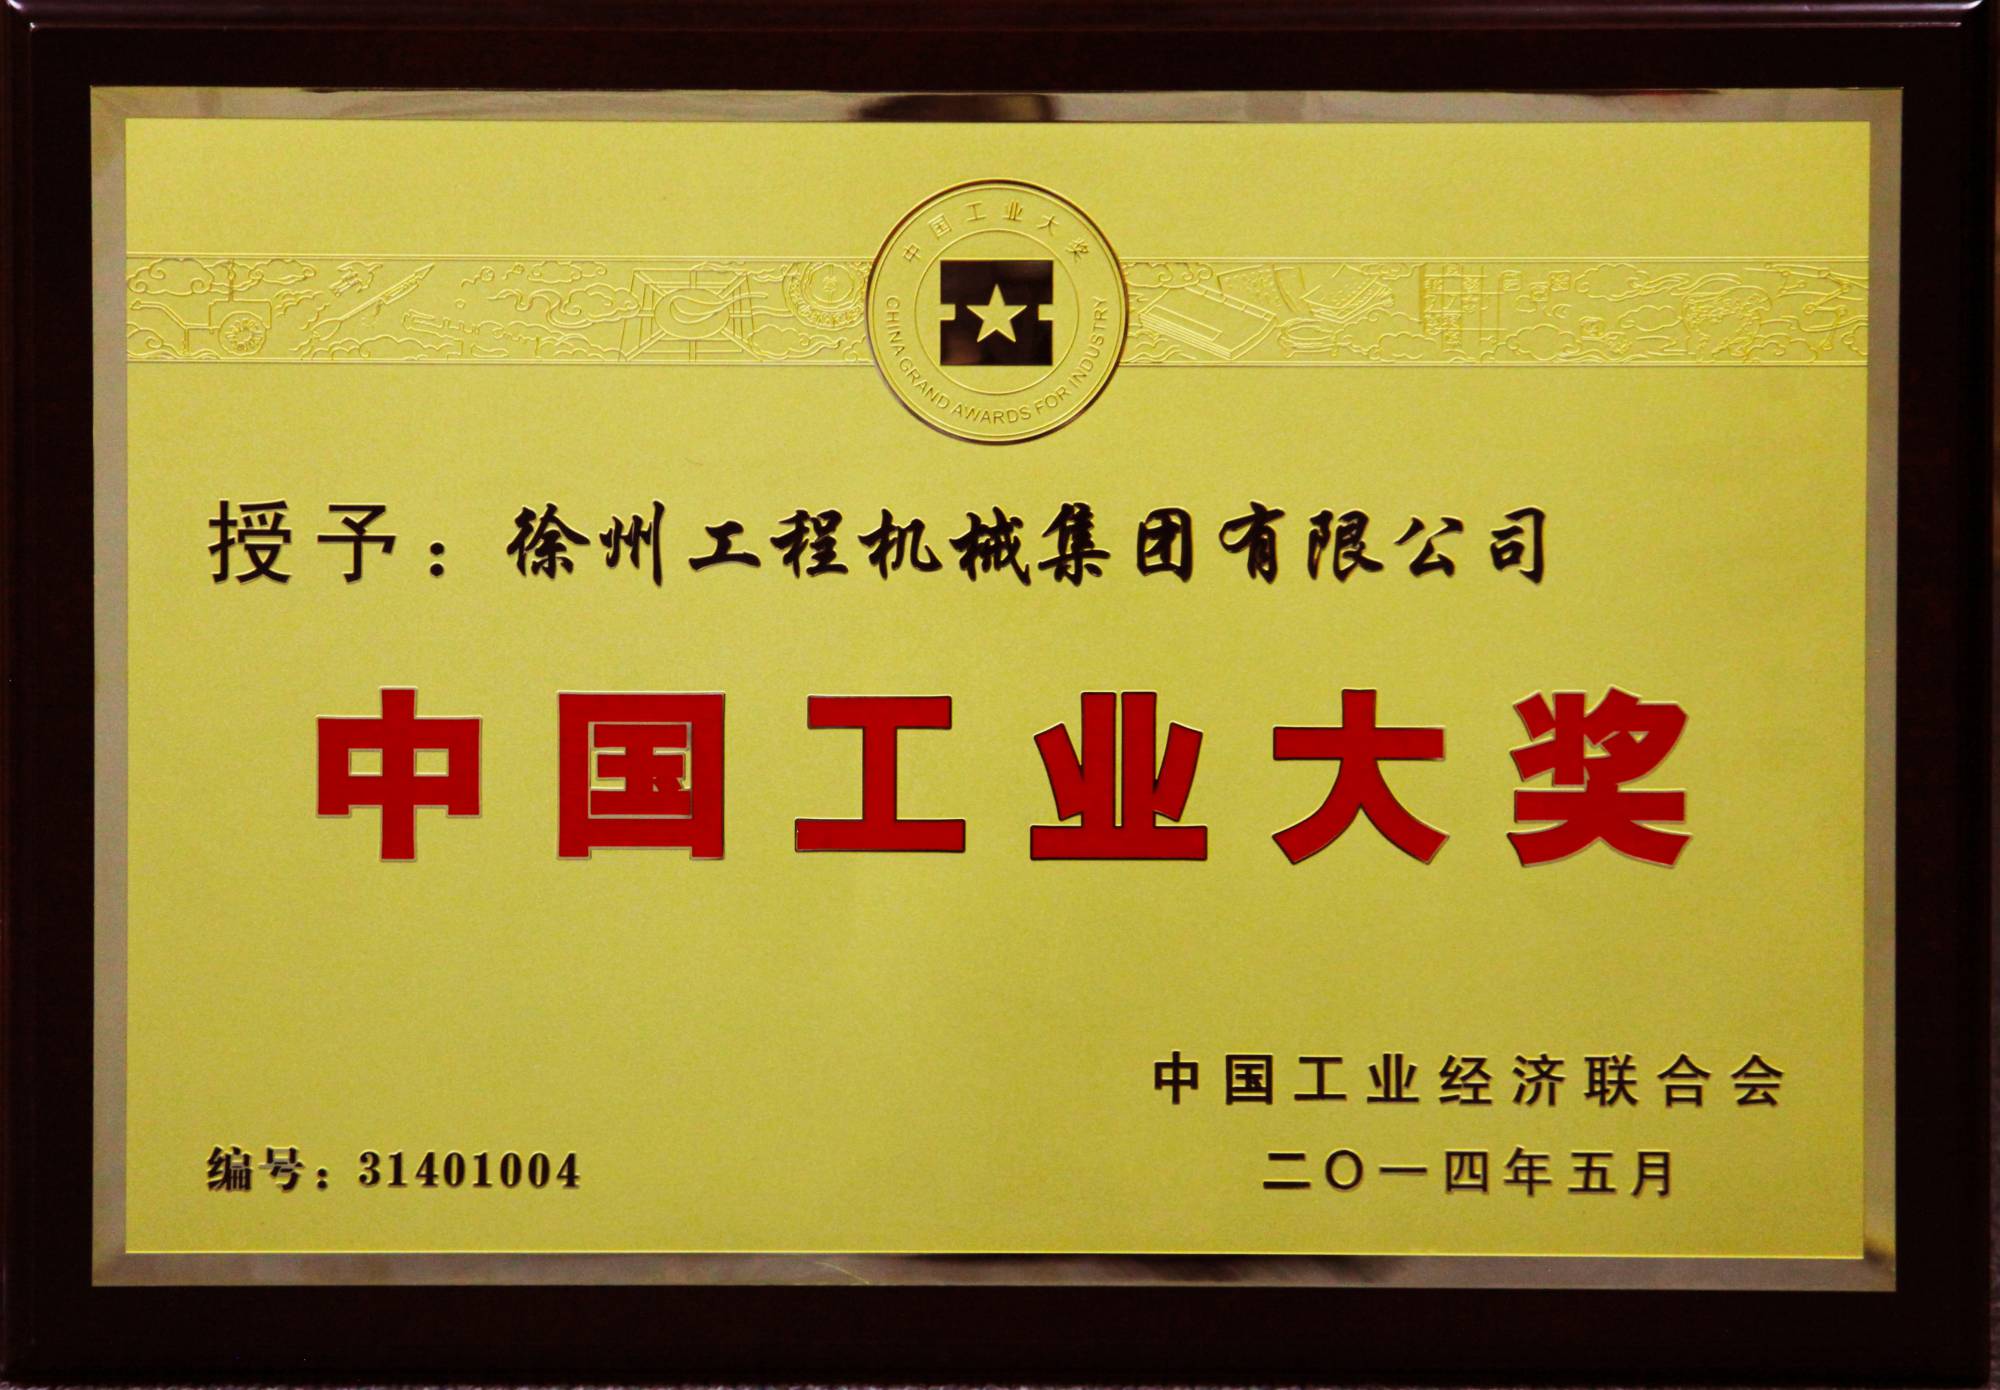 AG8旗舰厅荣膺行业唯一的中国工业领域最高奖项——中国工业大奖